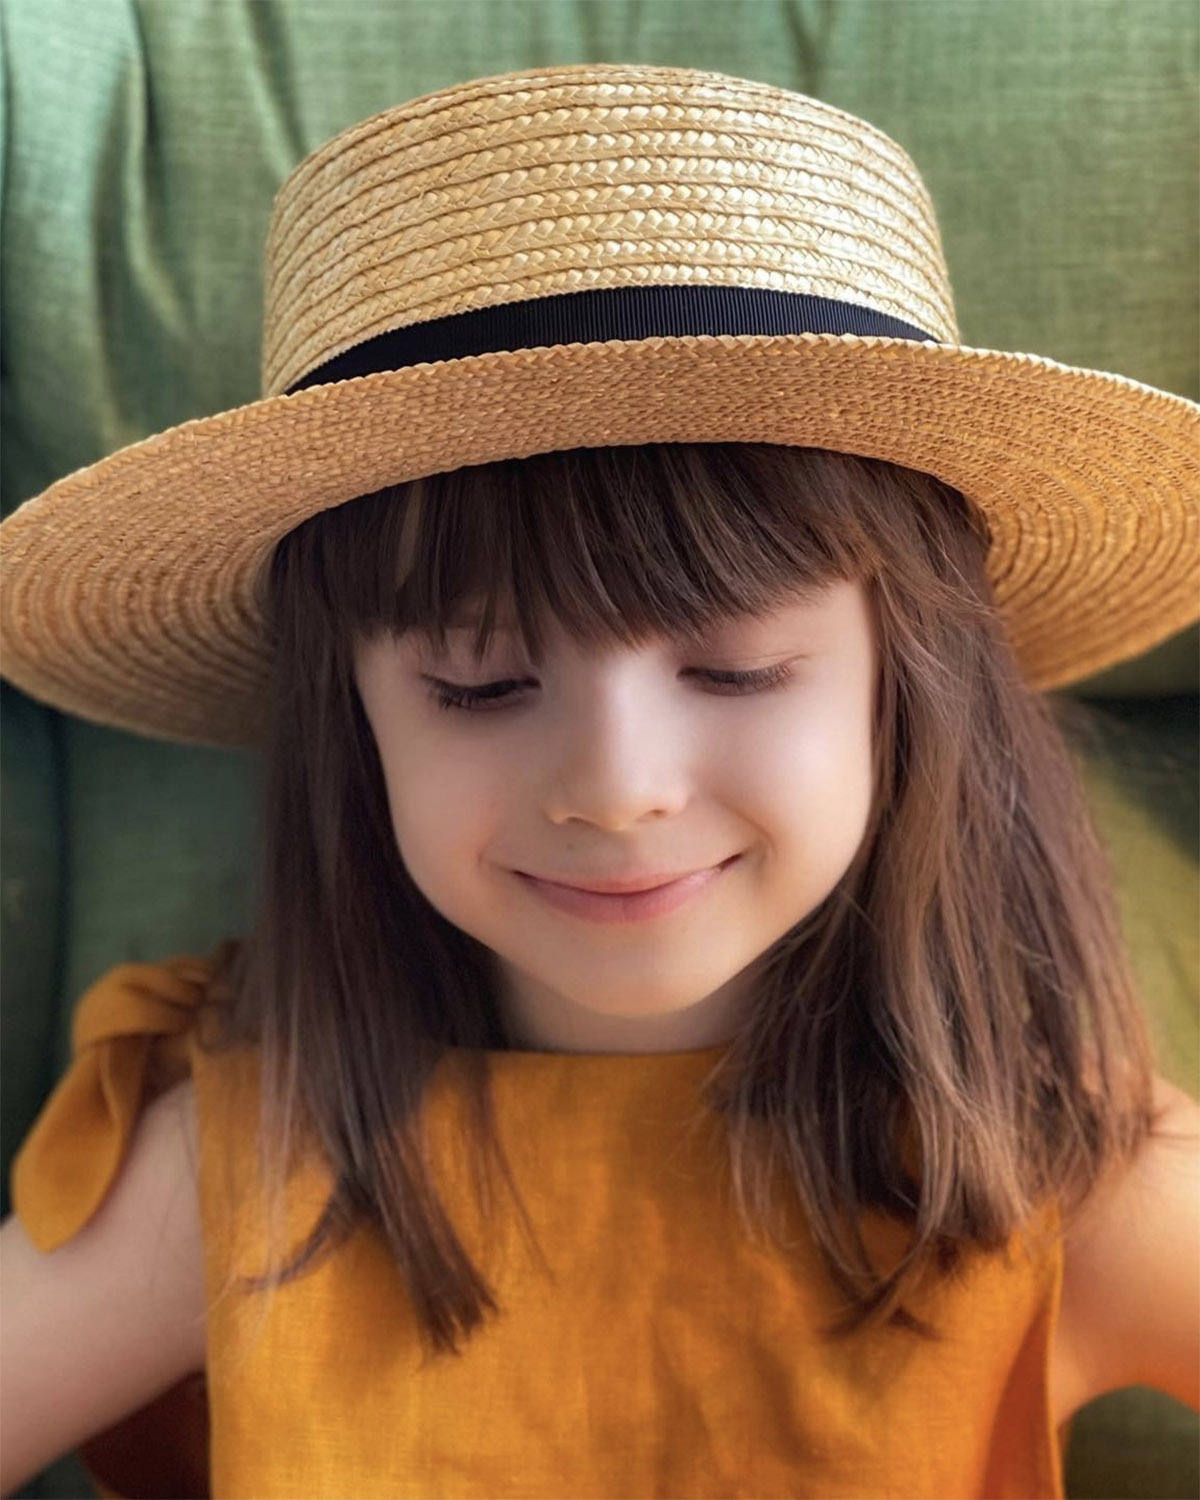 Соломенная шляпа-канотье с пчелой